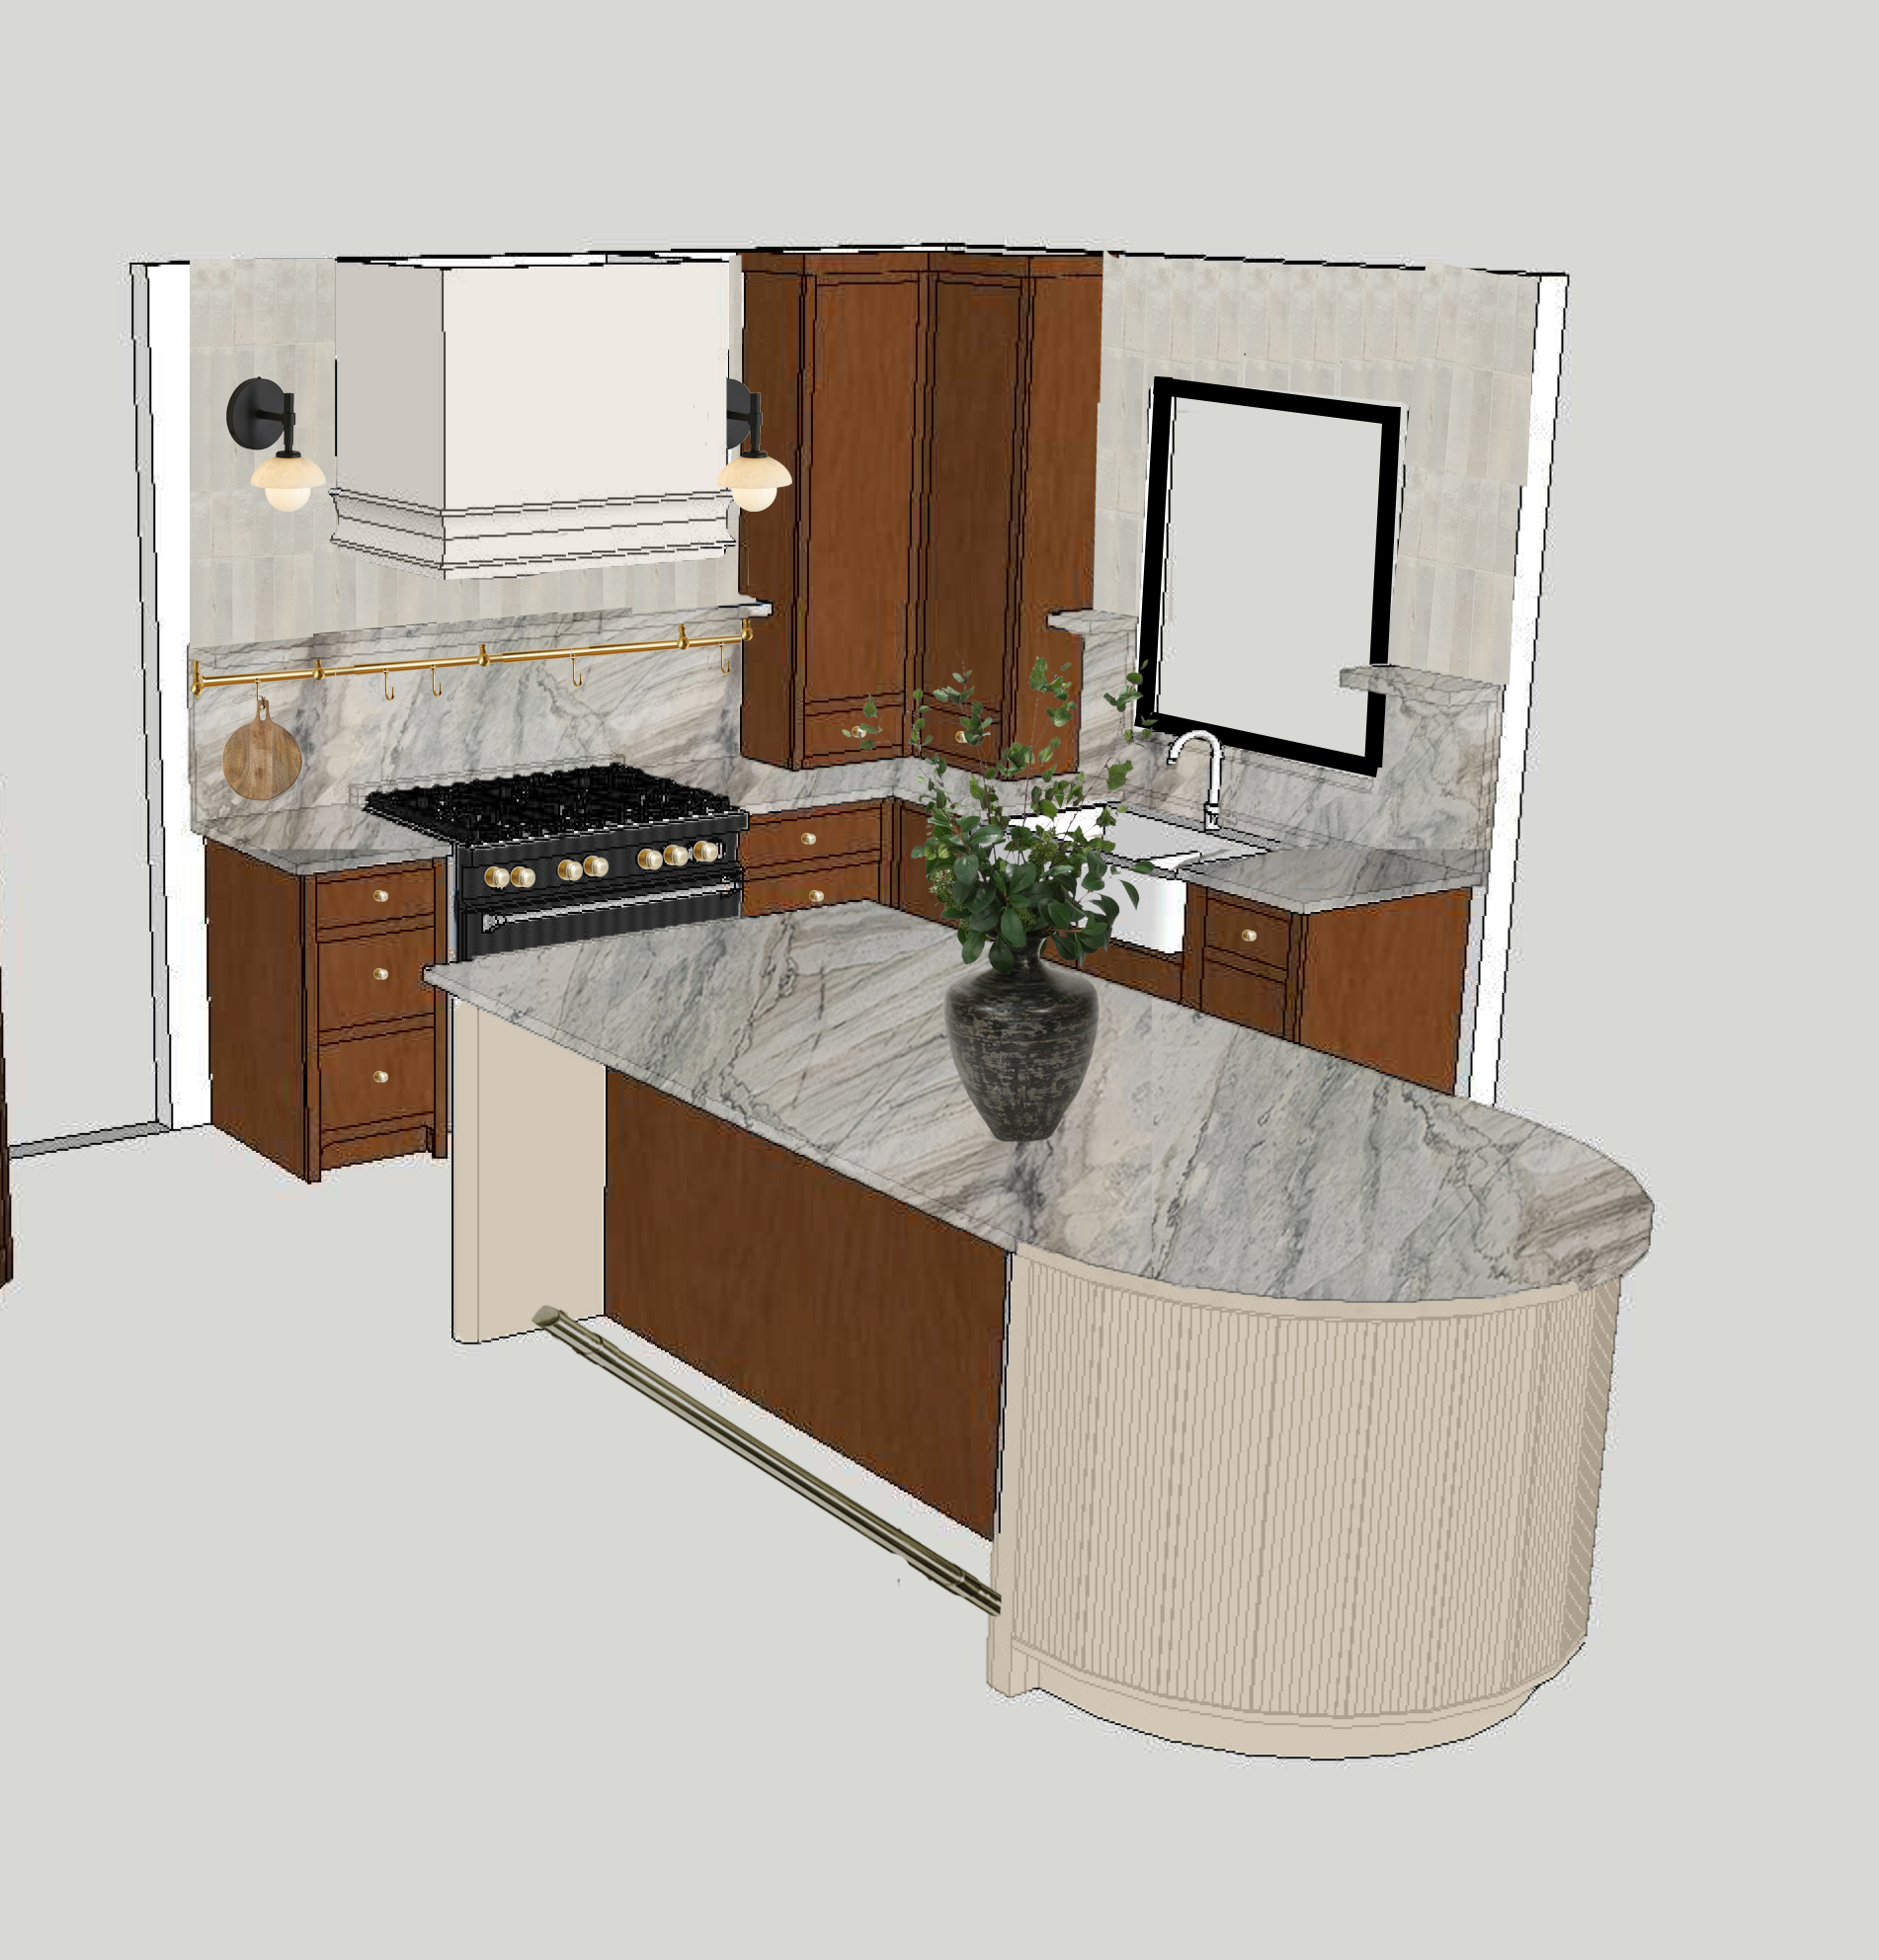 3D Kitchen Rendering Designs